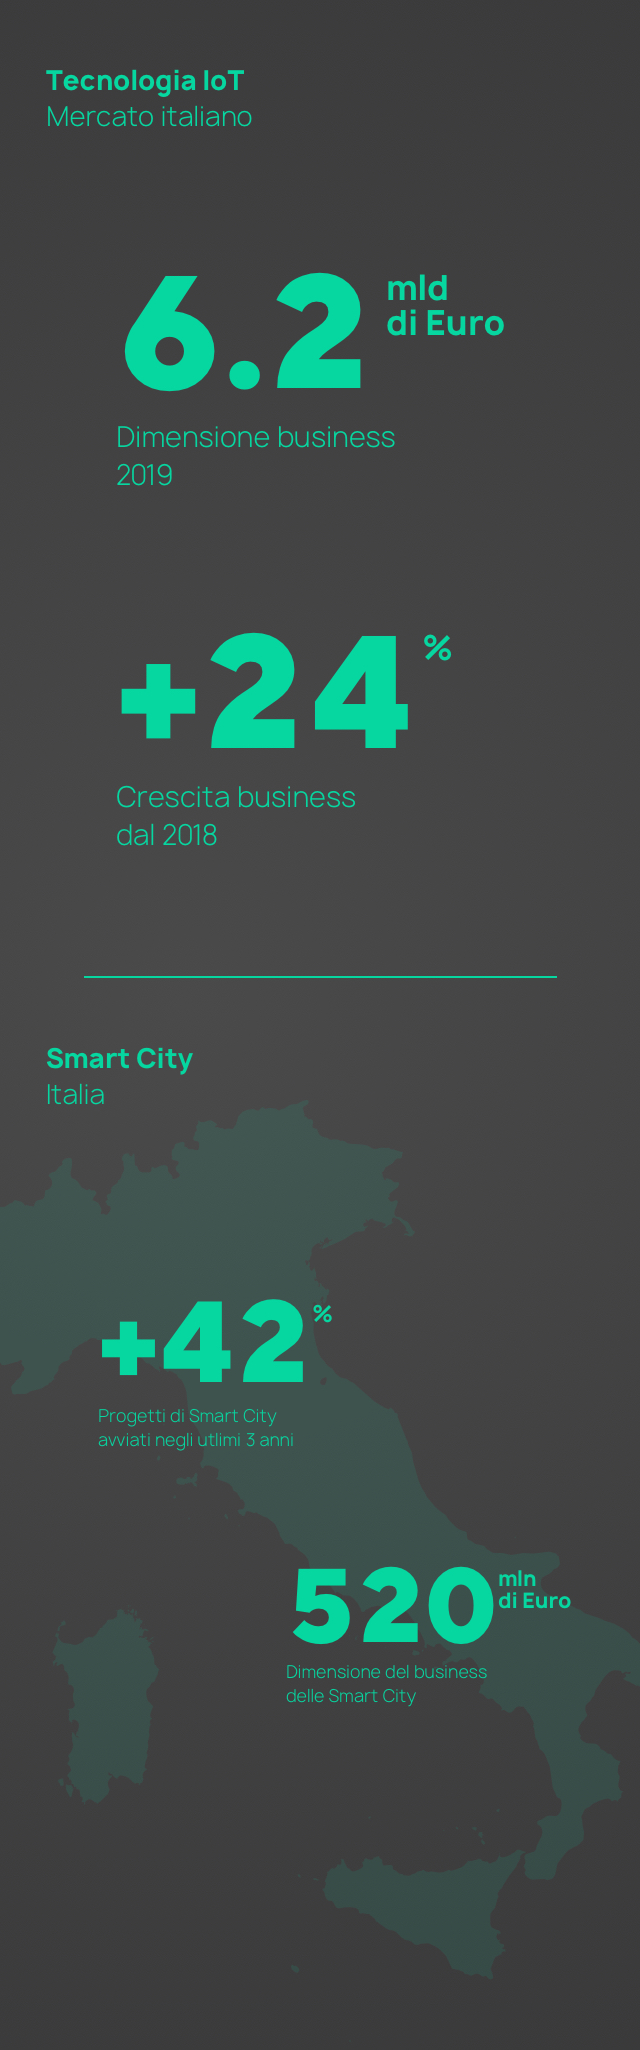 Dati mercato italiano IoT e progetti